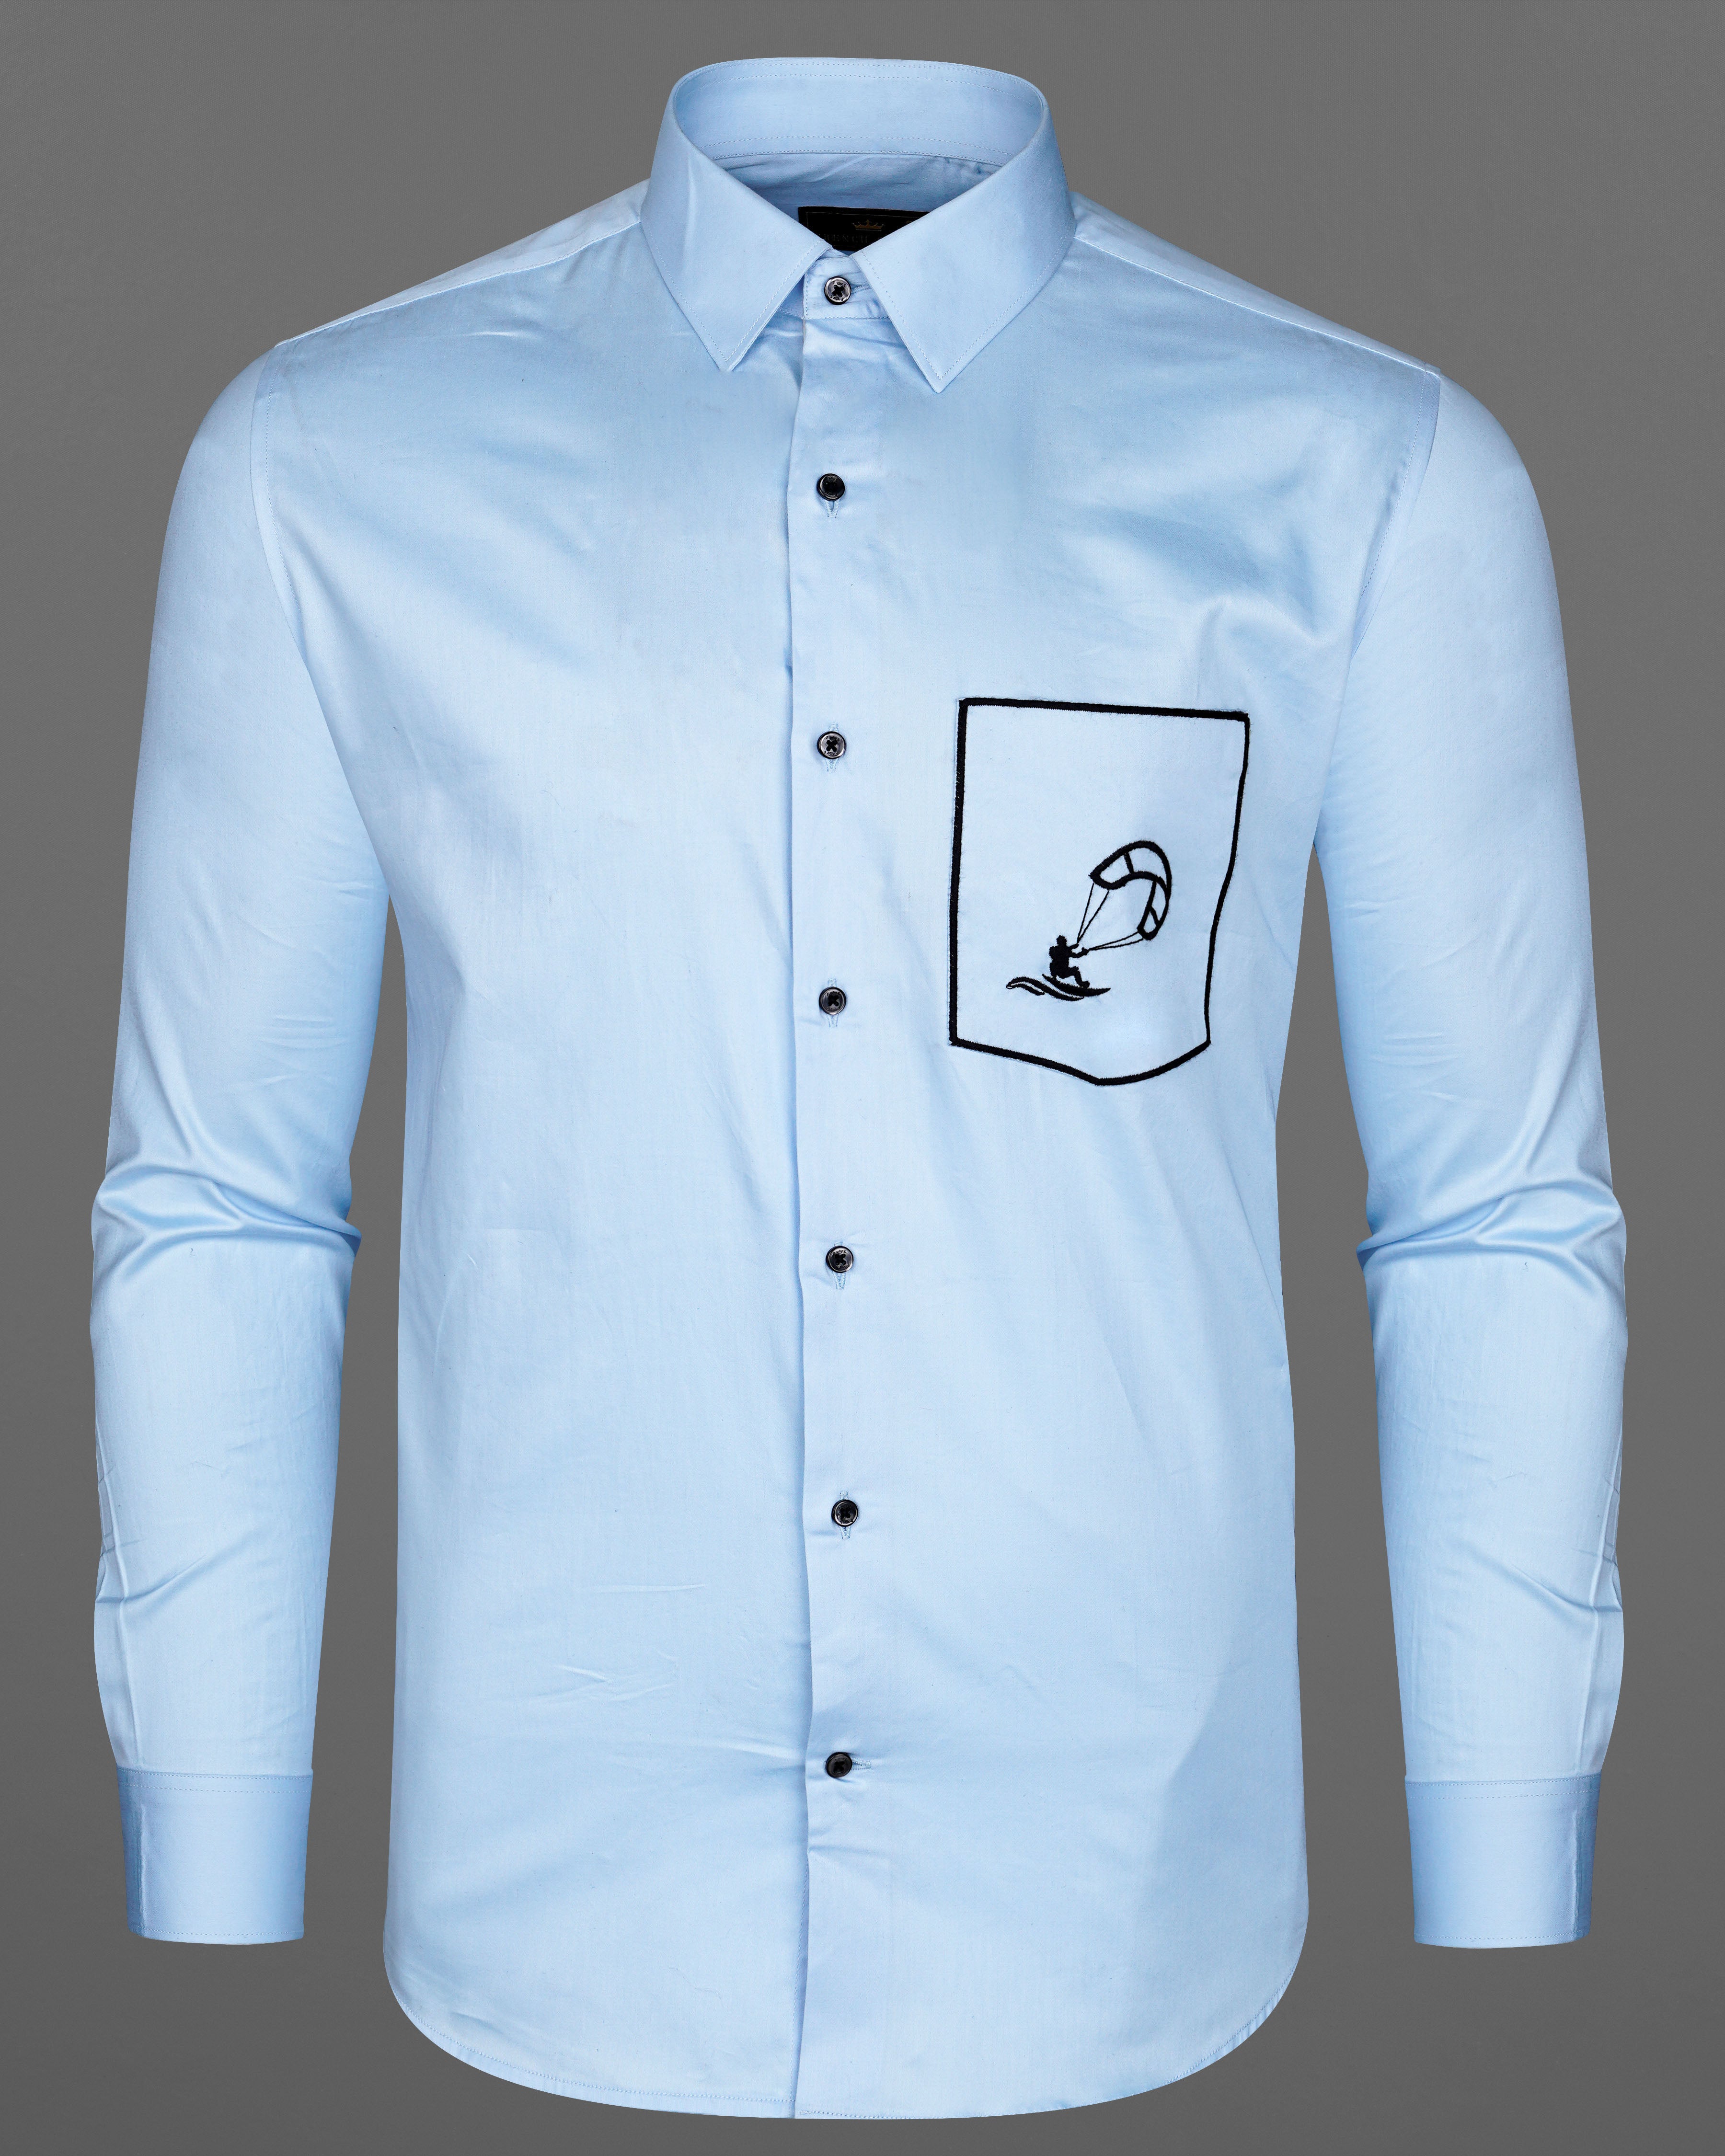 Spindle Blue Patch Pocket Paragliding Embroidered Super Soft Premium Cotton Shirt  8624-BLK-E008-38,8624-BLK-E008-H-38,8624-BLK-E008-39,8624-BLK-E008-H-39,8624-BLK-E008-40,8624-BLK-E008-H-40,8624-BLK-E008-42,8624-BLK-E008-H-42,8624-BLK-E008-44,8624-BLK-E008-H-44,8624-BLK-E008-46,8624-BLK-E008-H-46,8624-BLK-E008-48,8624-BLK-E008-H-48,8624-BLK-E008-50,8624-BLK-E008-H-50,8624-BLK-E008-52,8624-BLK-E008-H-52